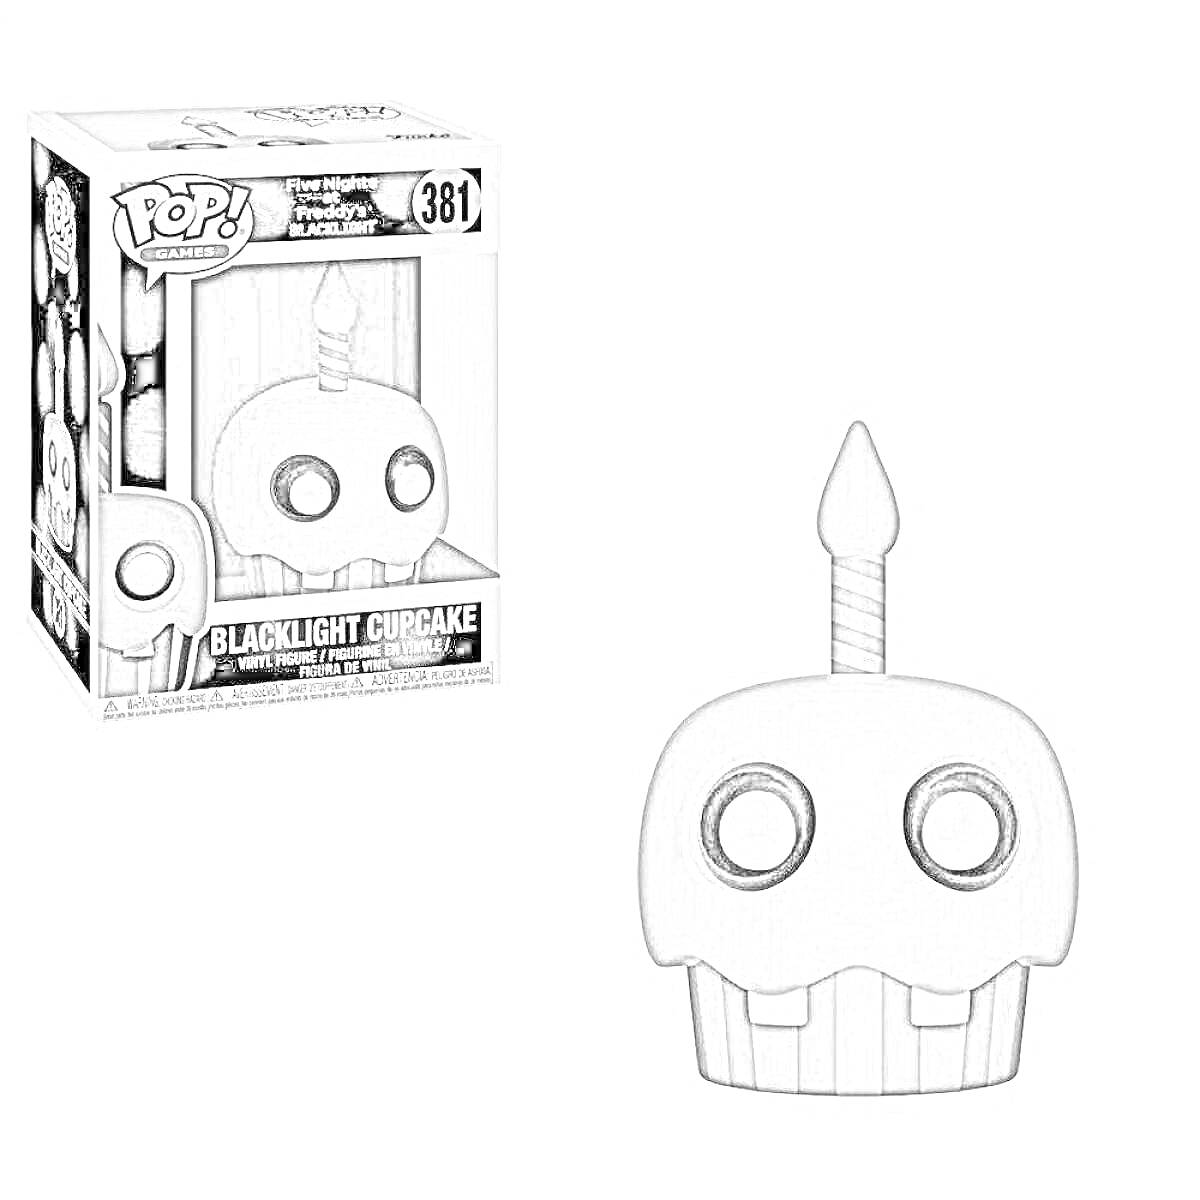 РаскраскаBlacklight Cupcake Funko Pop аниматроник с подсвеченной свечой на коробке и фигурка